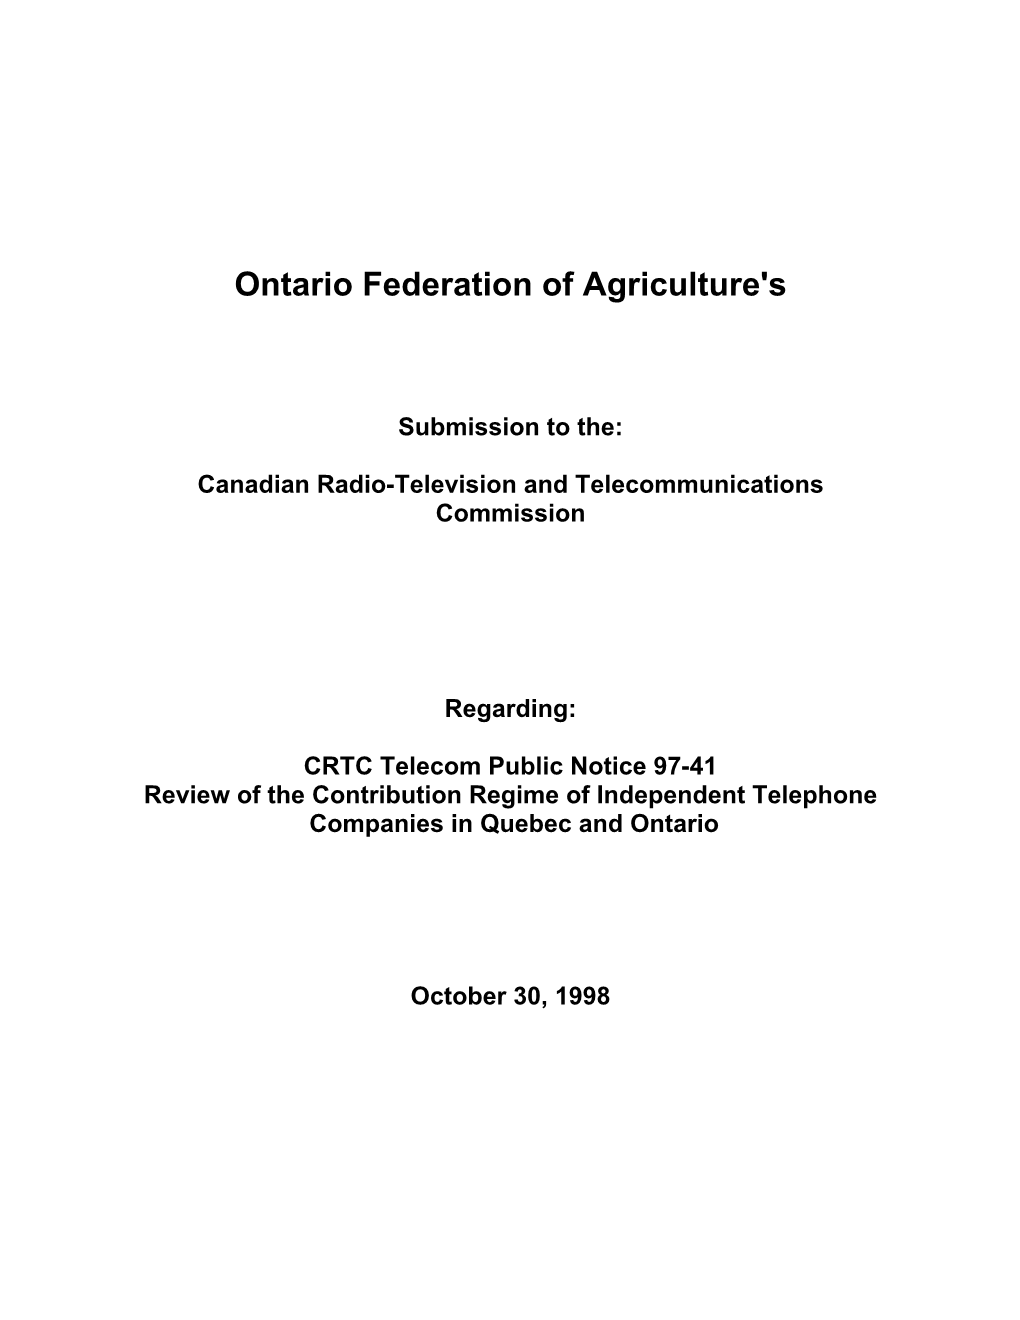 OFA Submission to the CRTC Regarding Public Notice 97-41